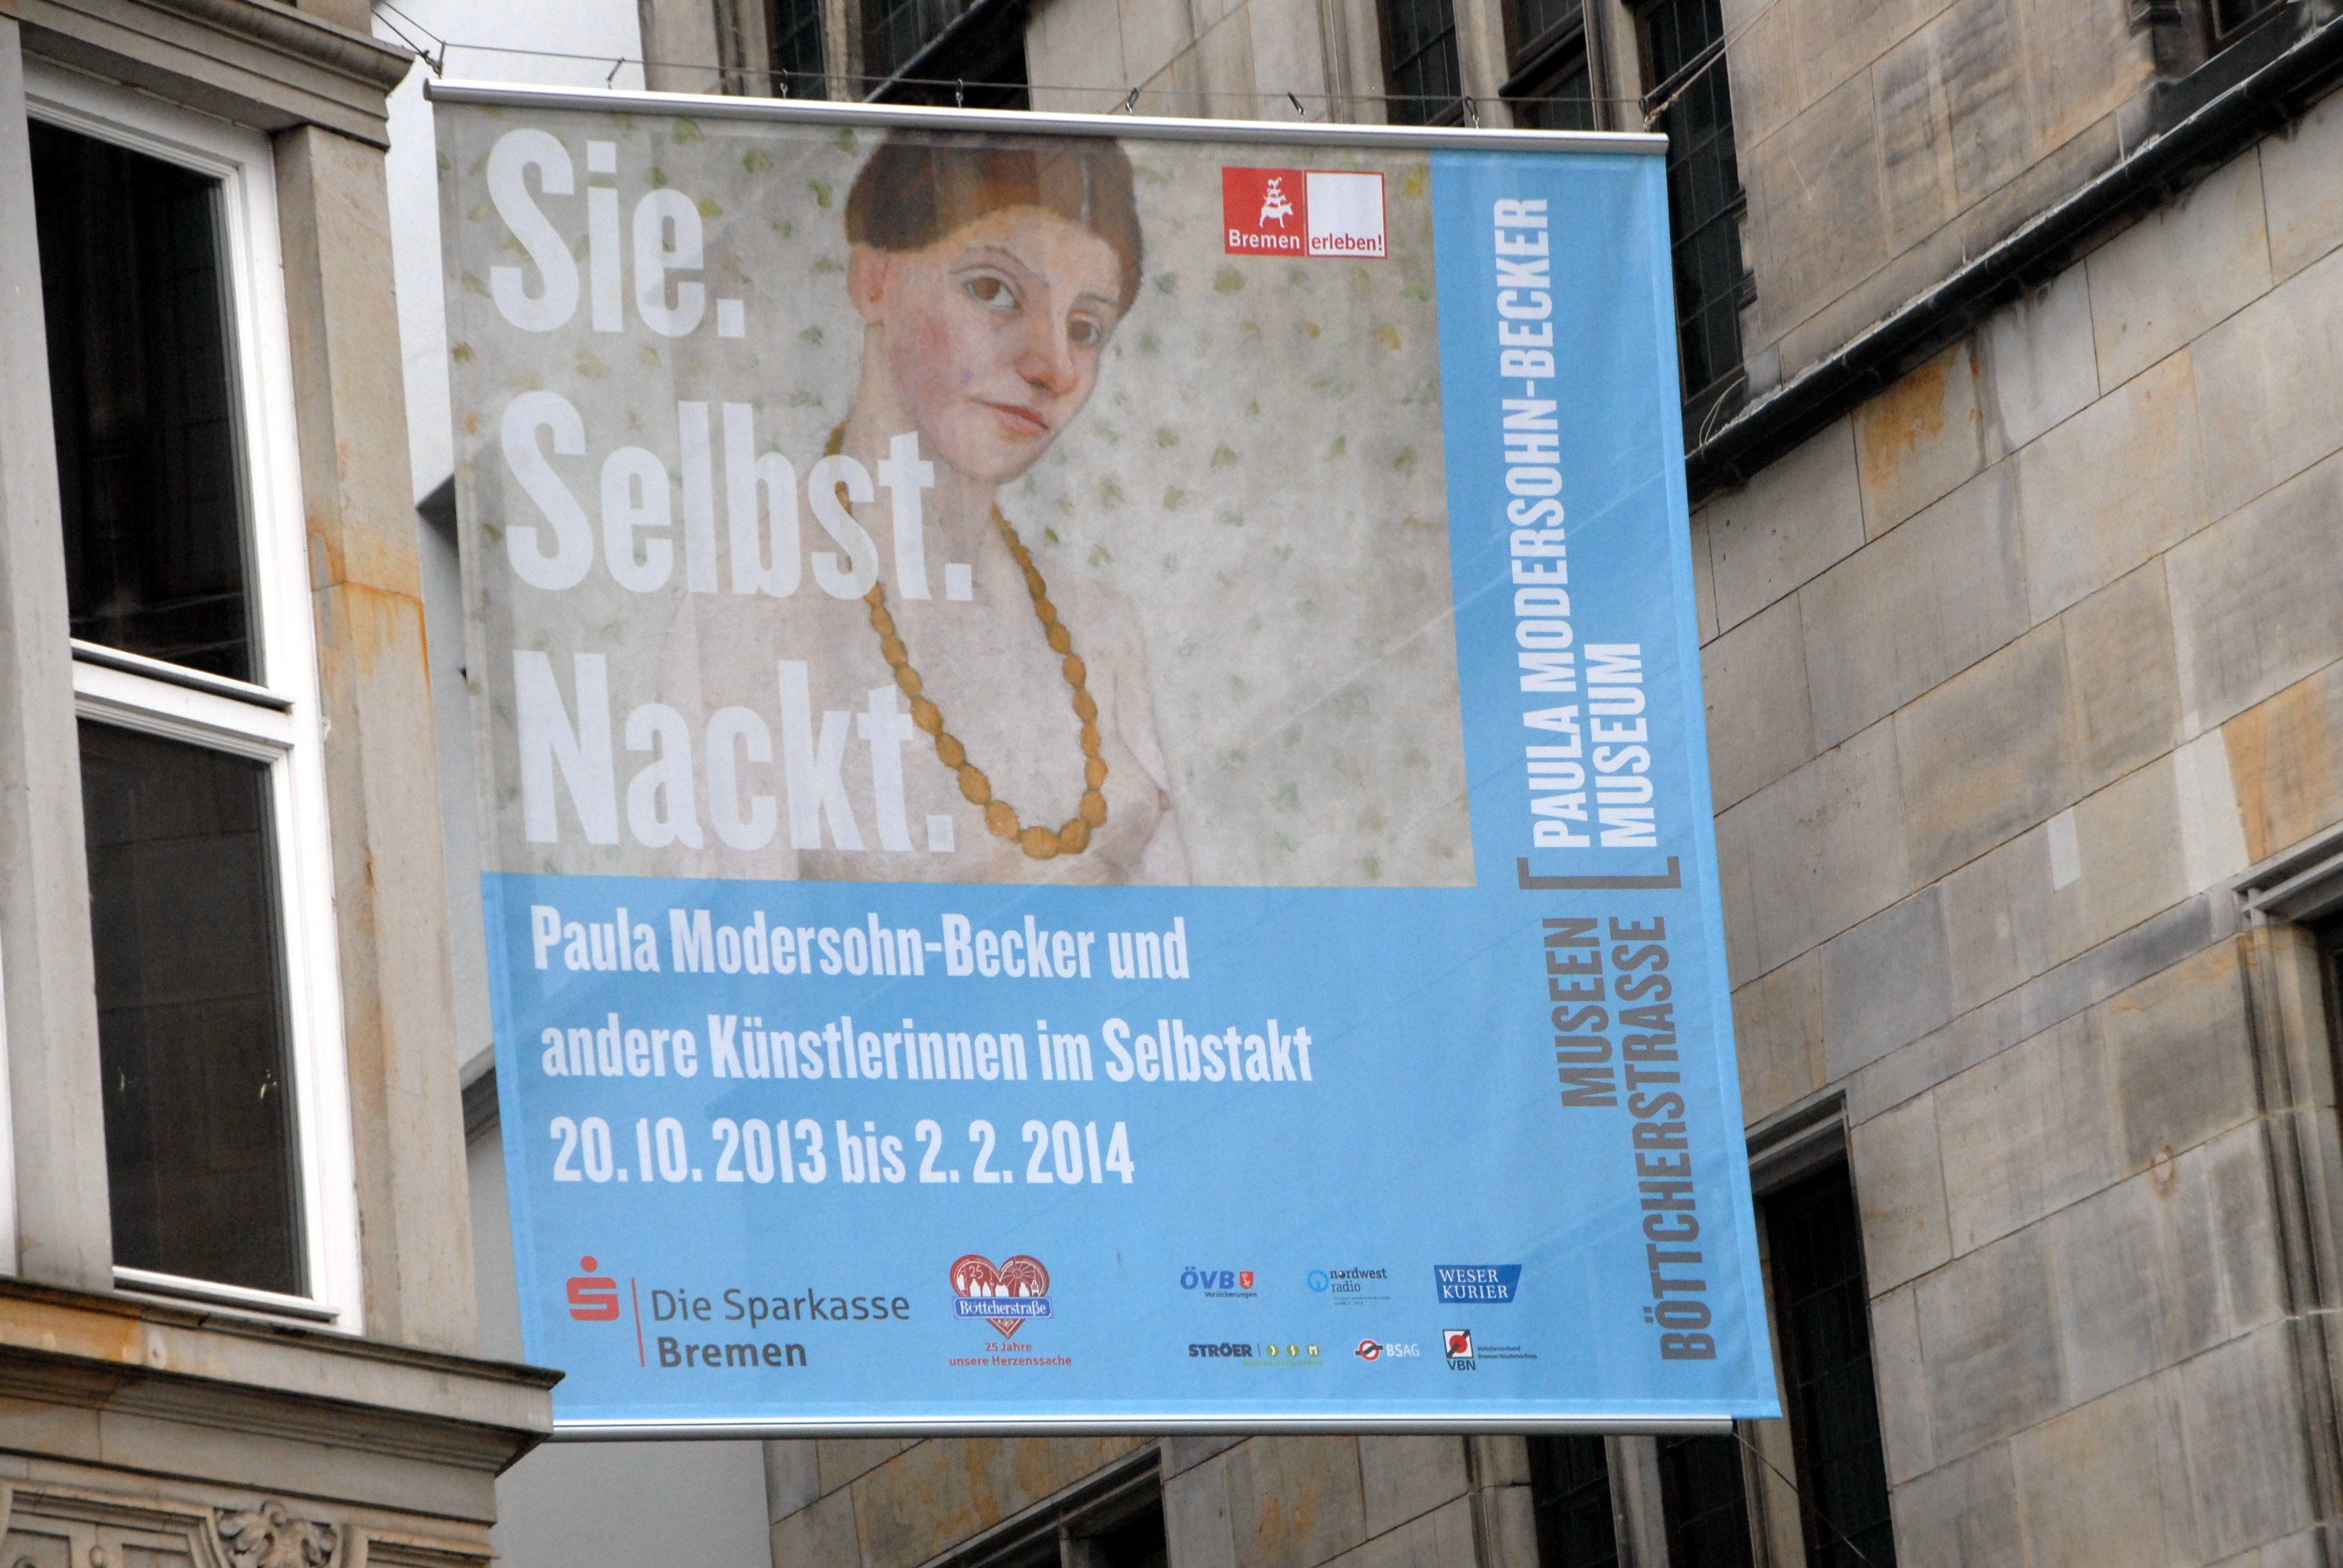 Werbe-Plakat für "Paula Modersohn-Becker-Museum", Marktplatz, Bremen, Deutschland, Europa, Reise, BB, DIG; P.-Nr.: 731/2013, 12.10.2013; (Photo by Peter Bischoff/Getty Images) (Peter Bischoff—Getty Images)